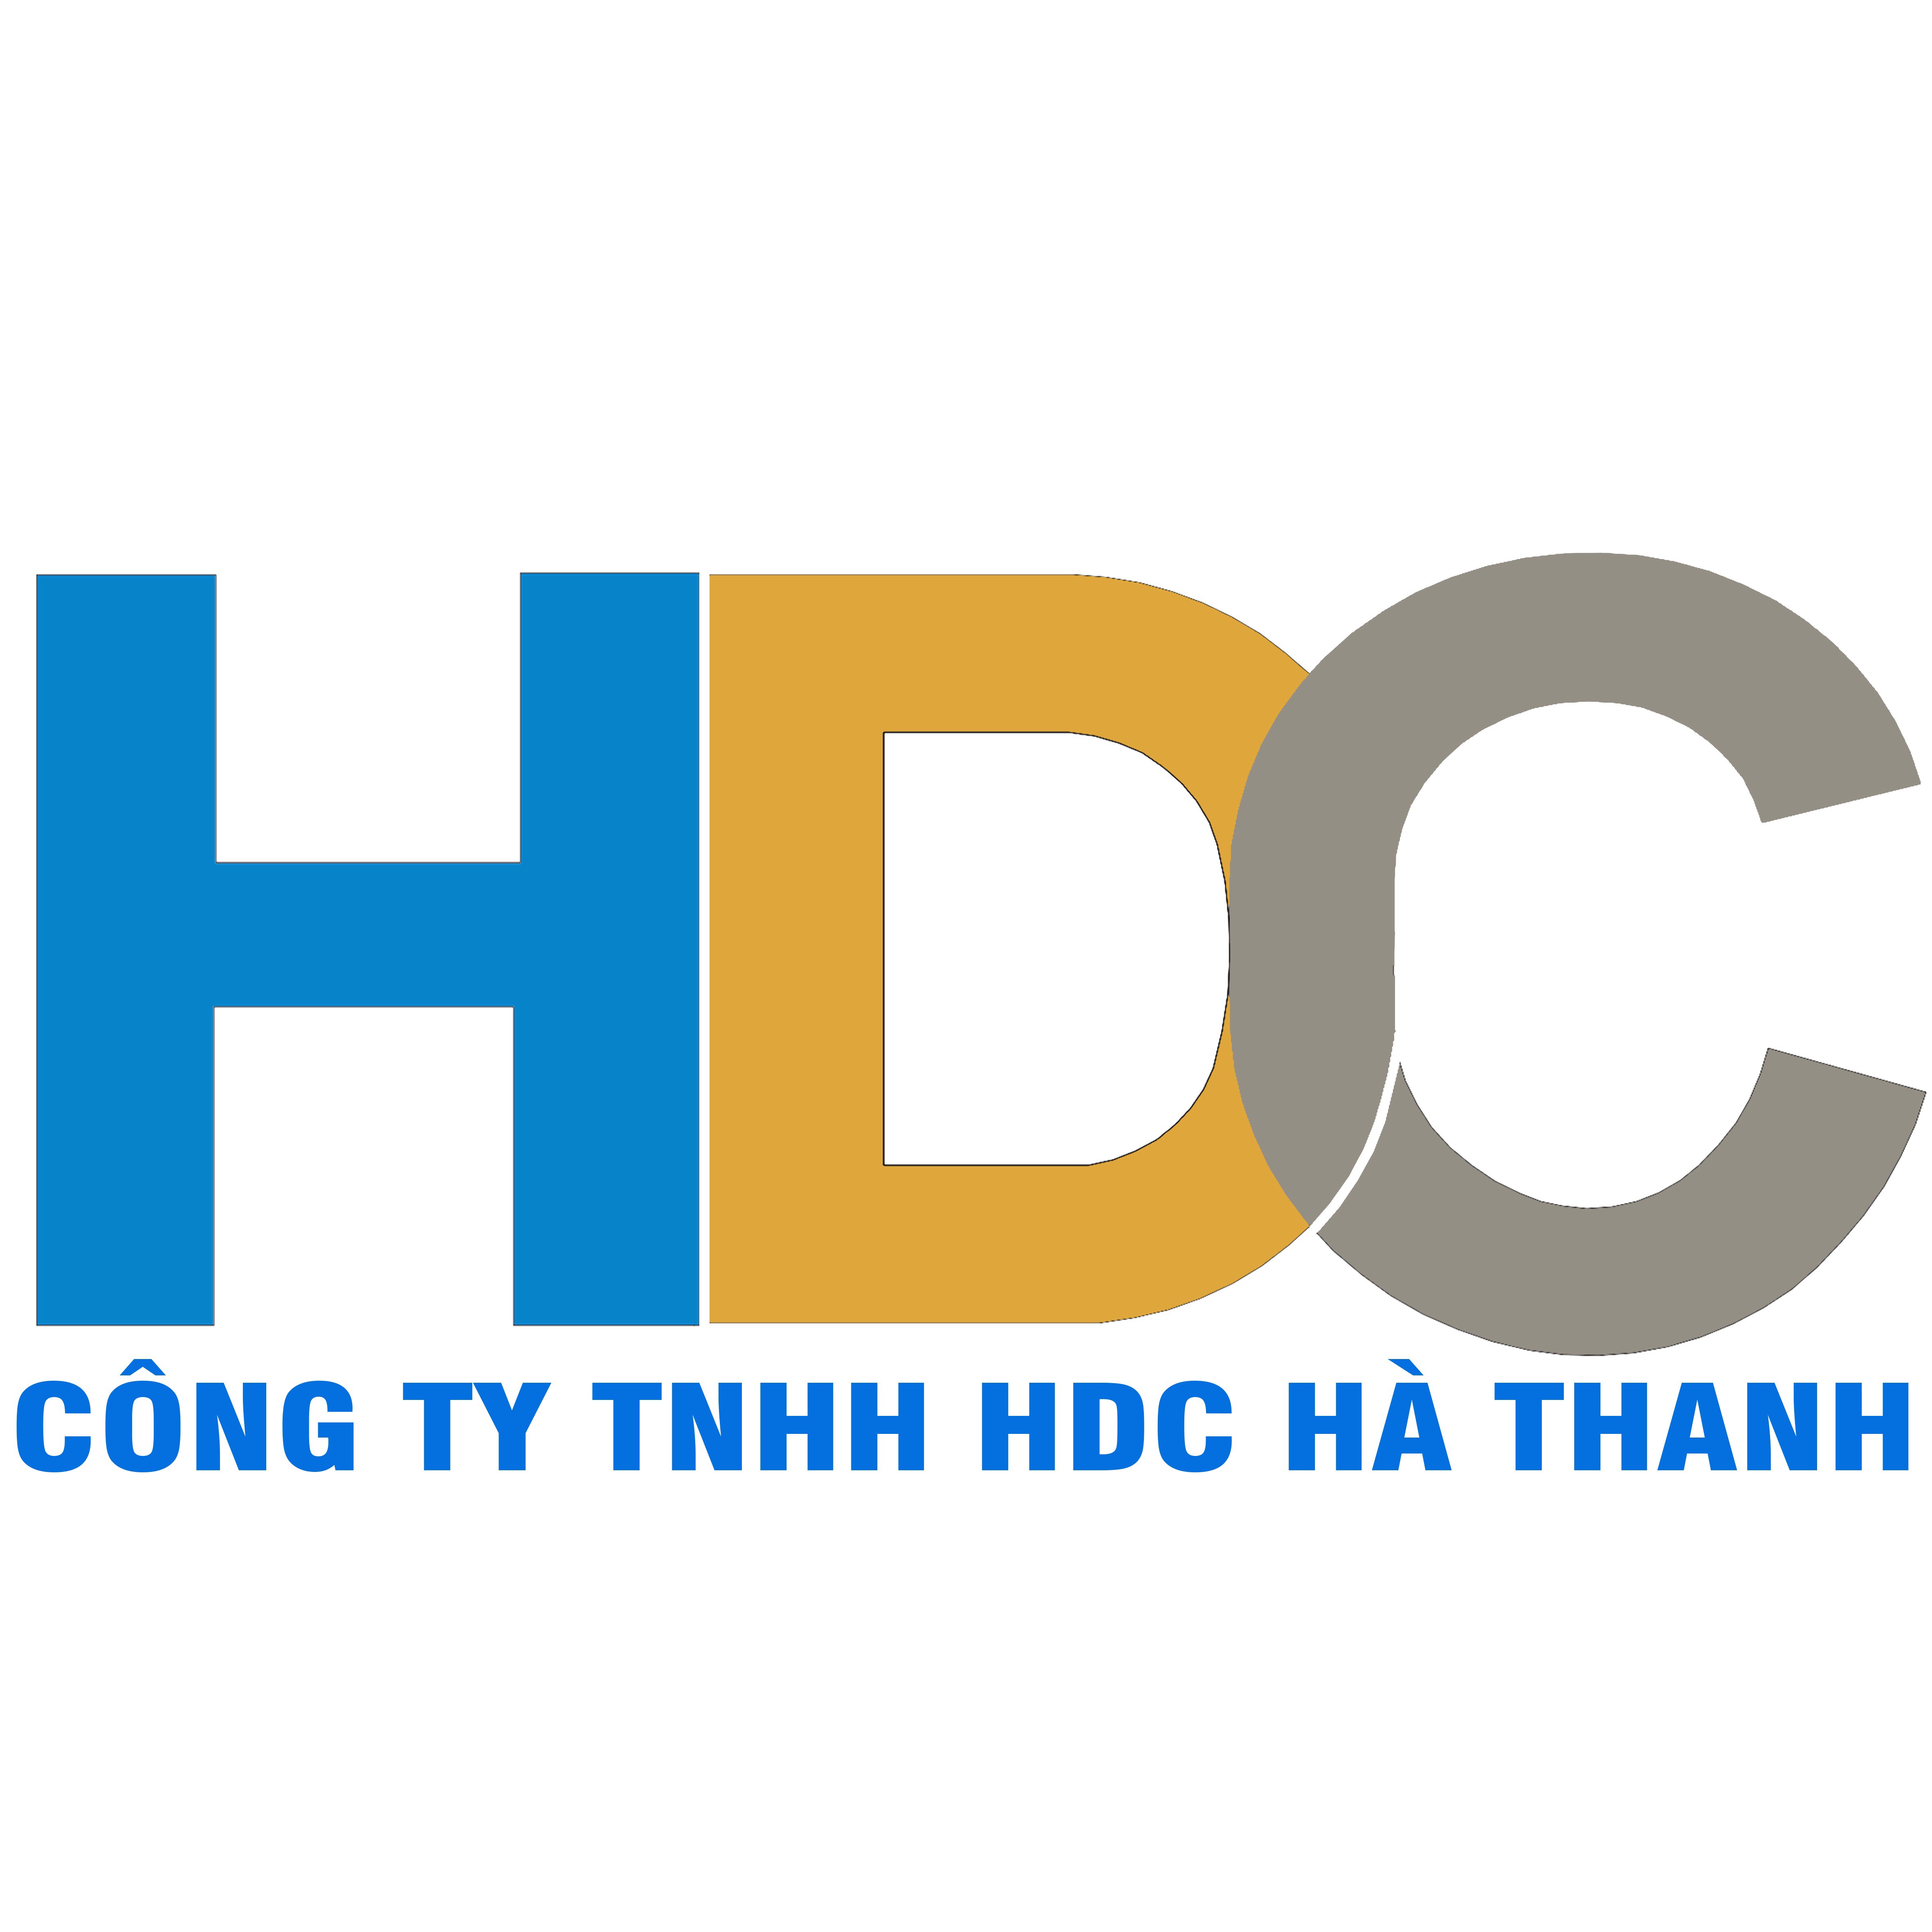  				Công ty TNHH HDC Hà Thanh				